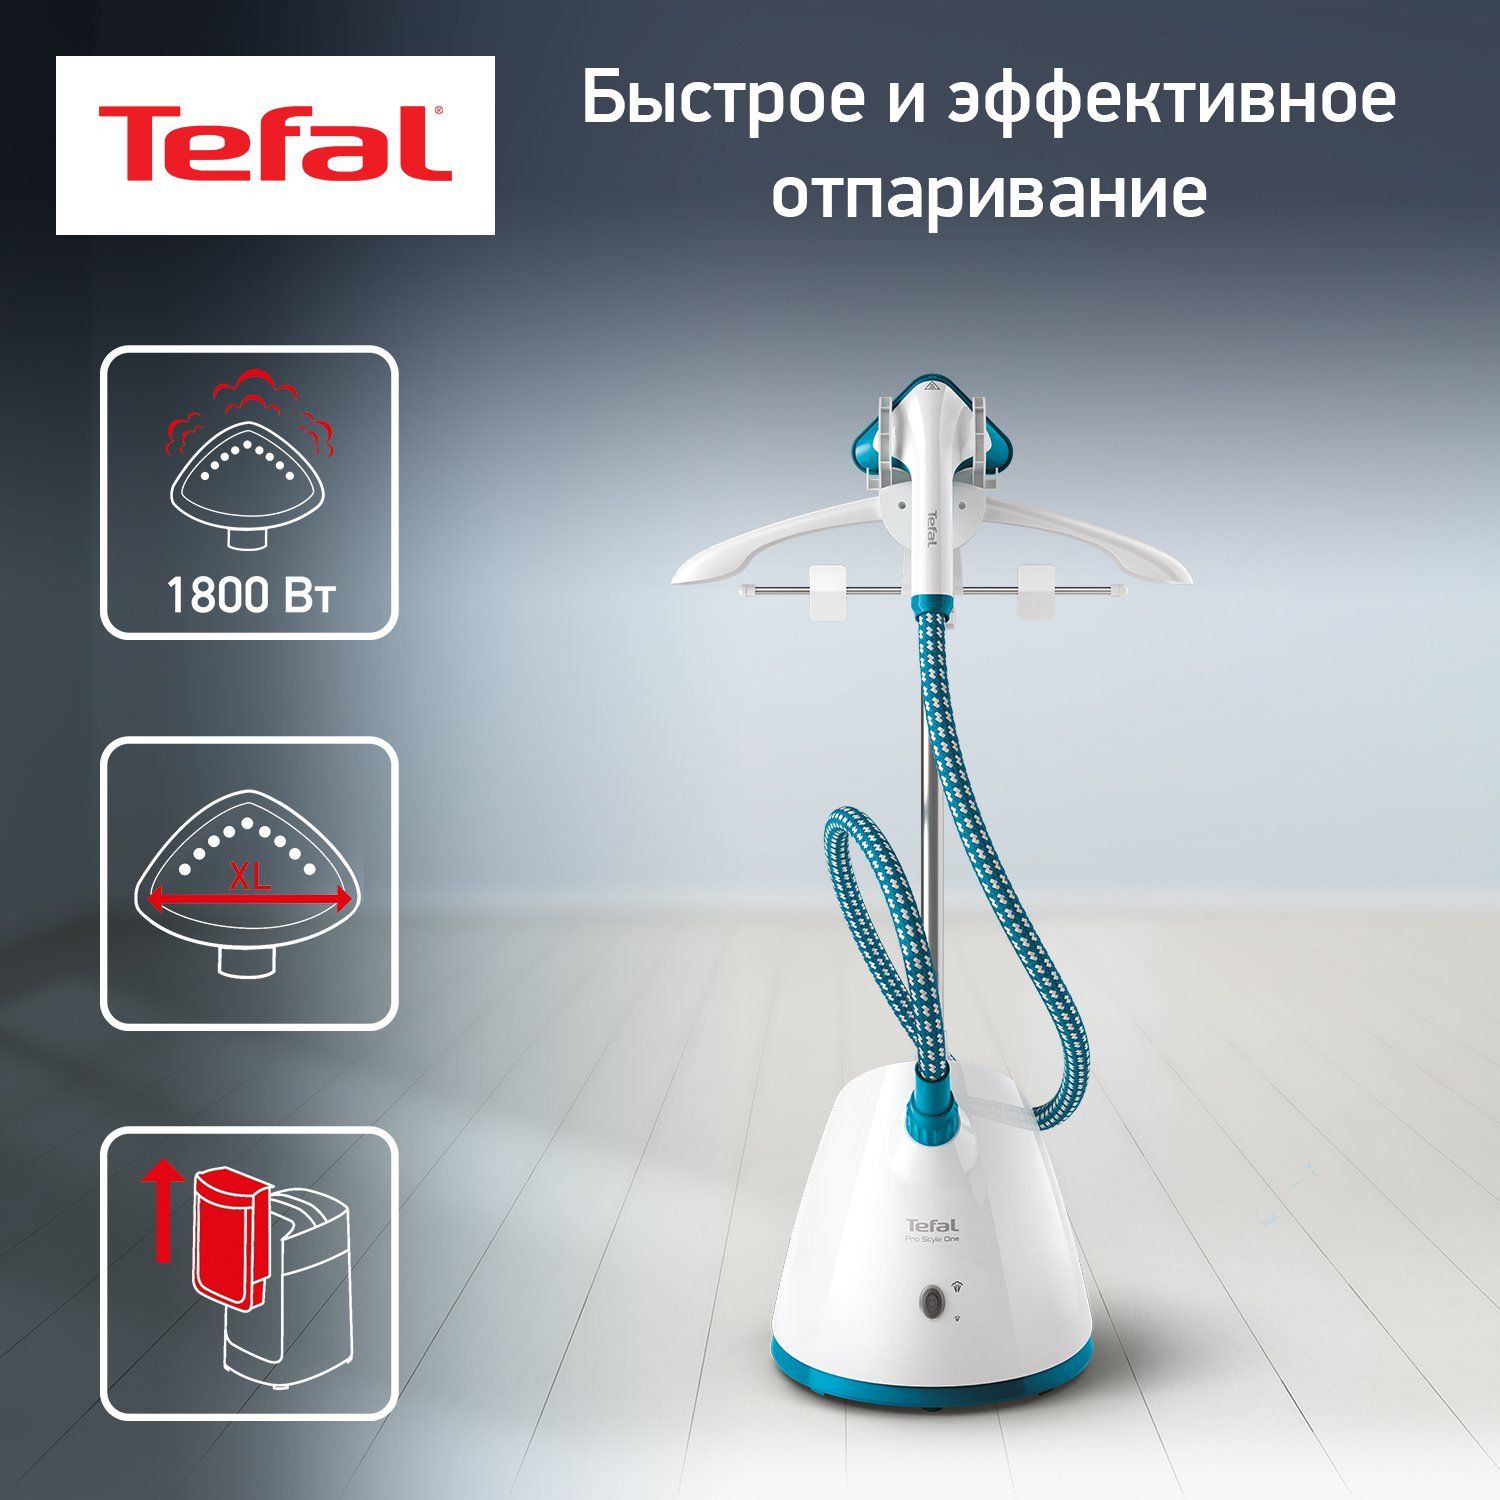 Вертикальный отпариватель Tefal Pro Style One IT2460E0 напольный, 1.5 л, белый/голубой - купить в Официальный магазин Tefal (Москва), цена на Мегамаркет